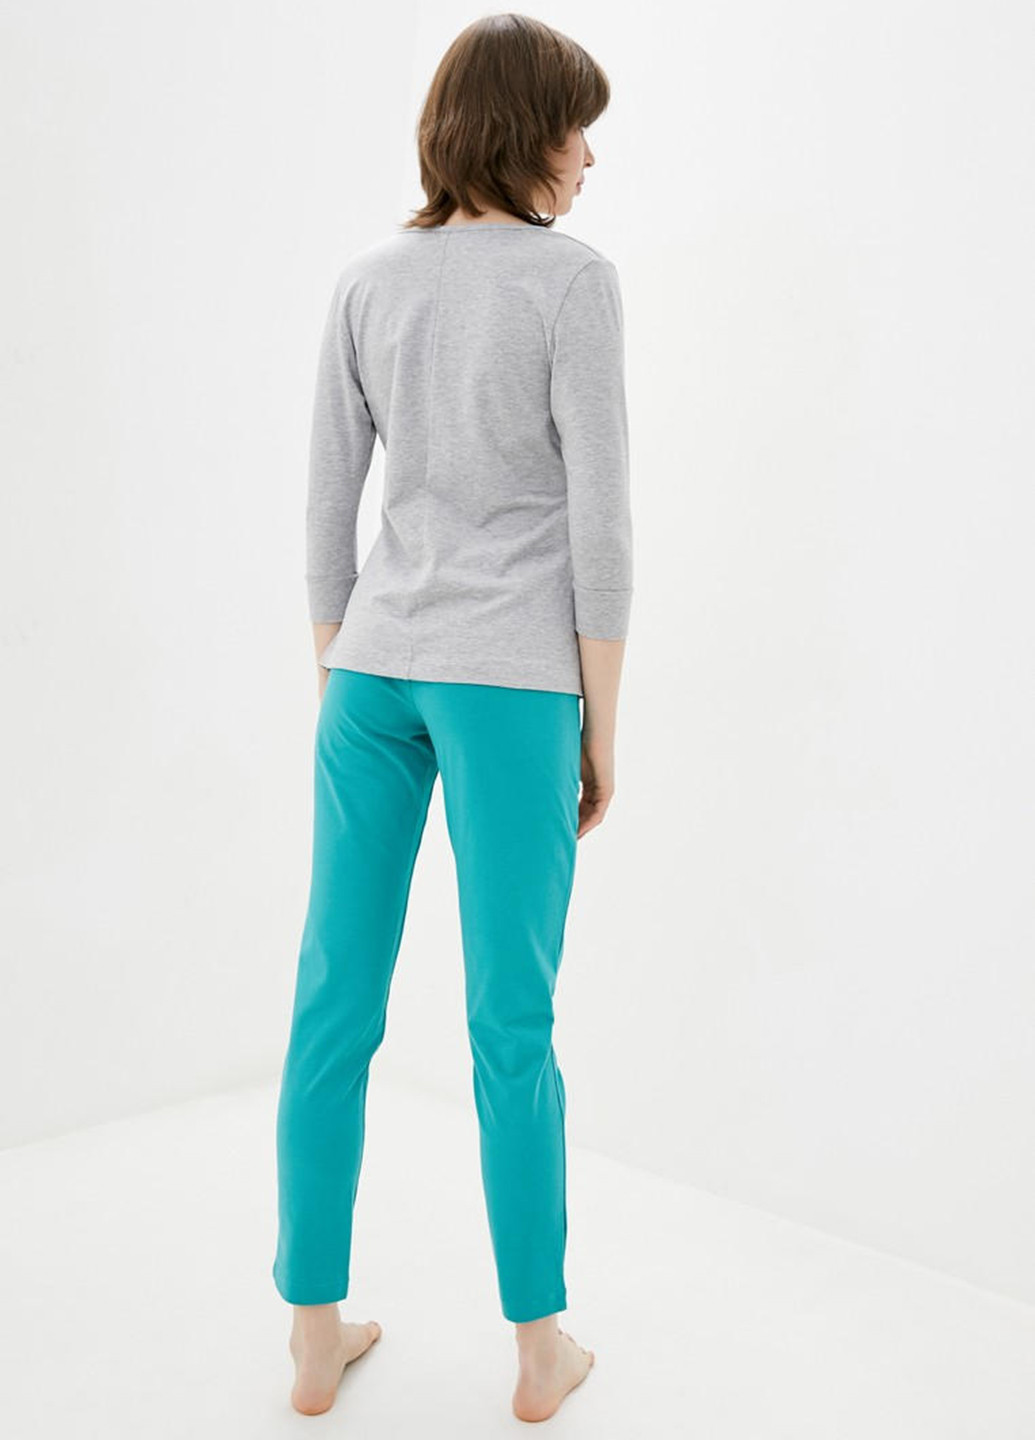 Серо-голубая всесезон пижама (лонгслив, брюки) лонгслив + брюки Promin